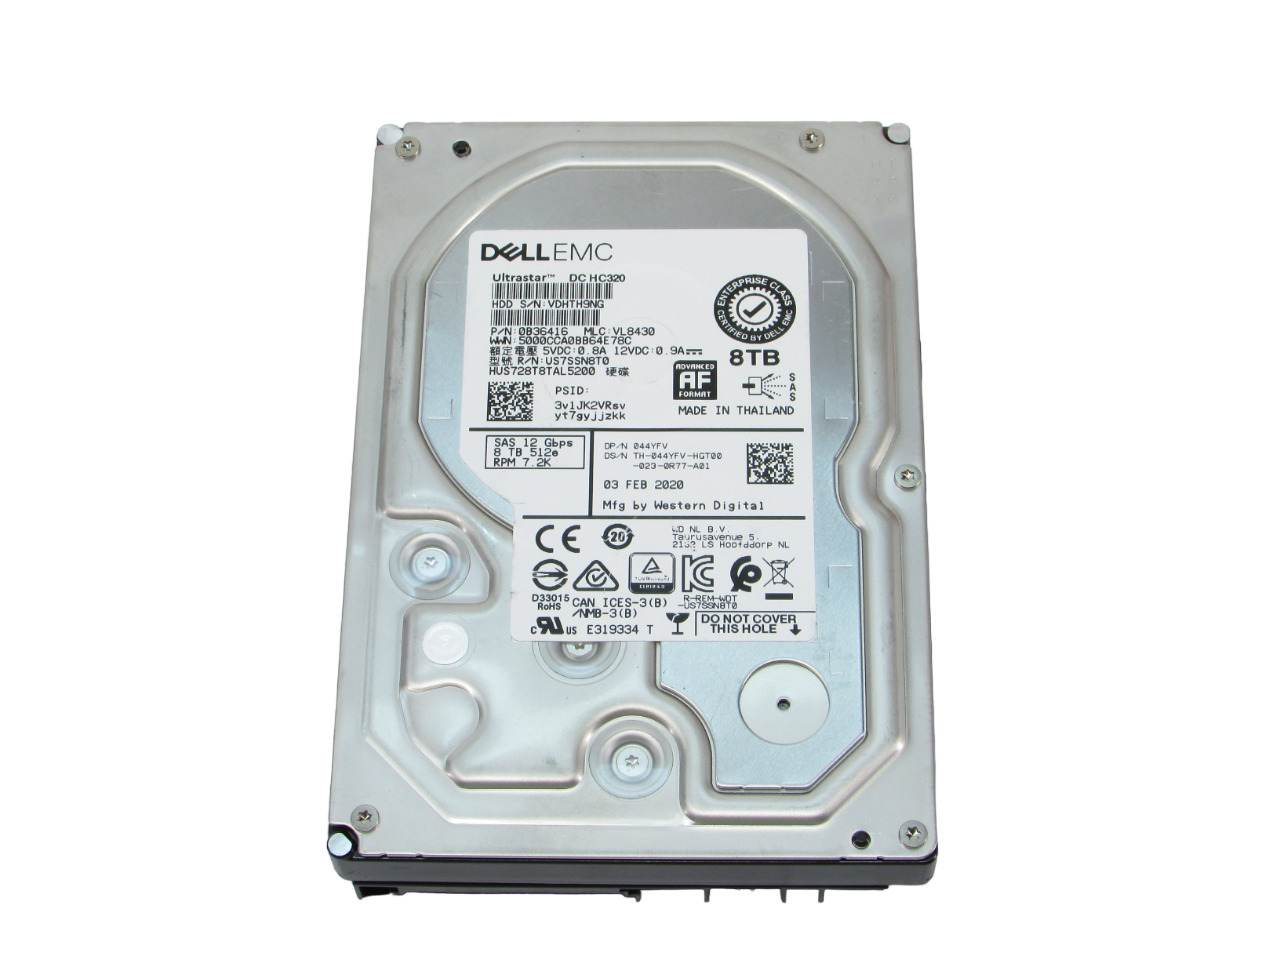 Dell EMC HUS728T8TAL5200 8TB 3.5